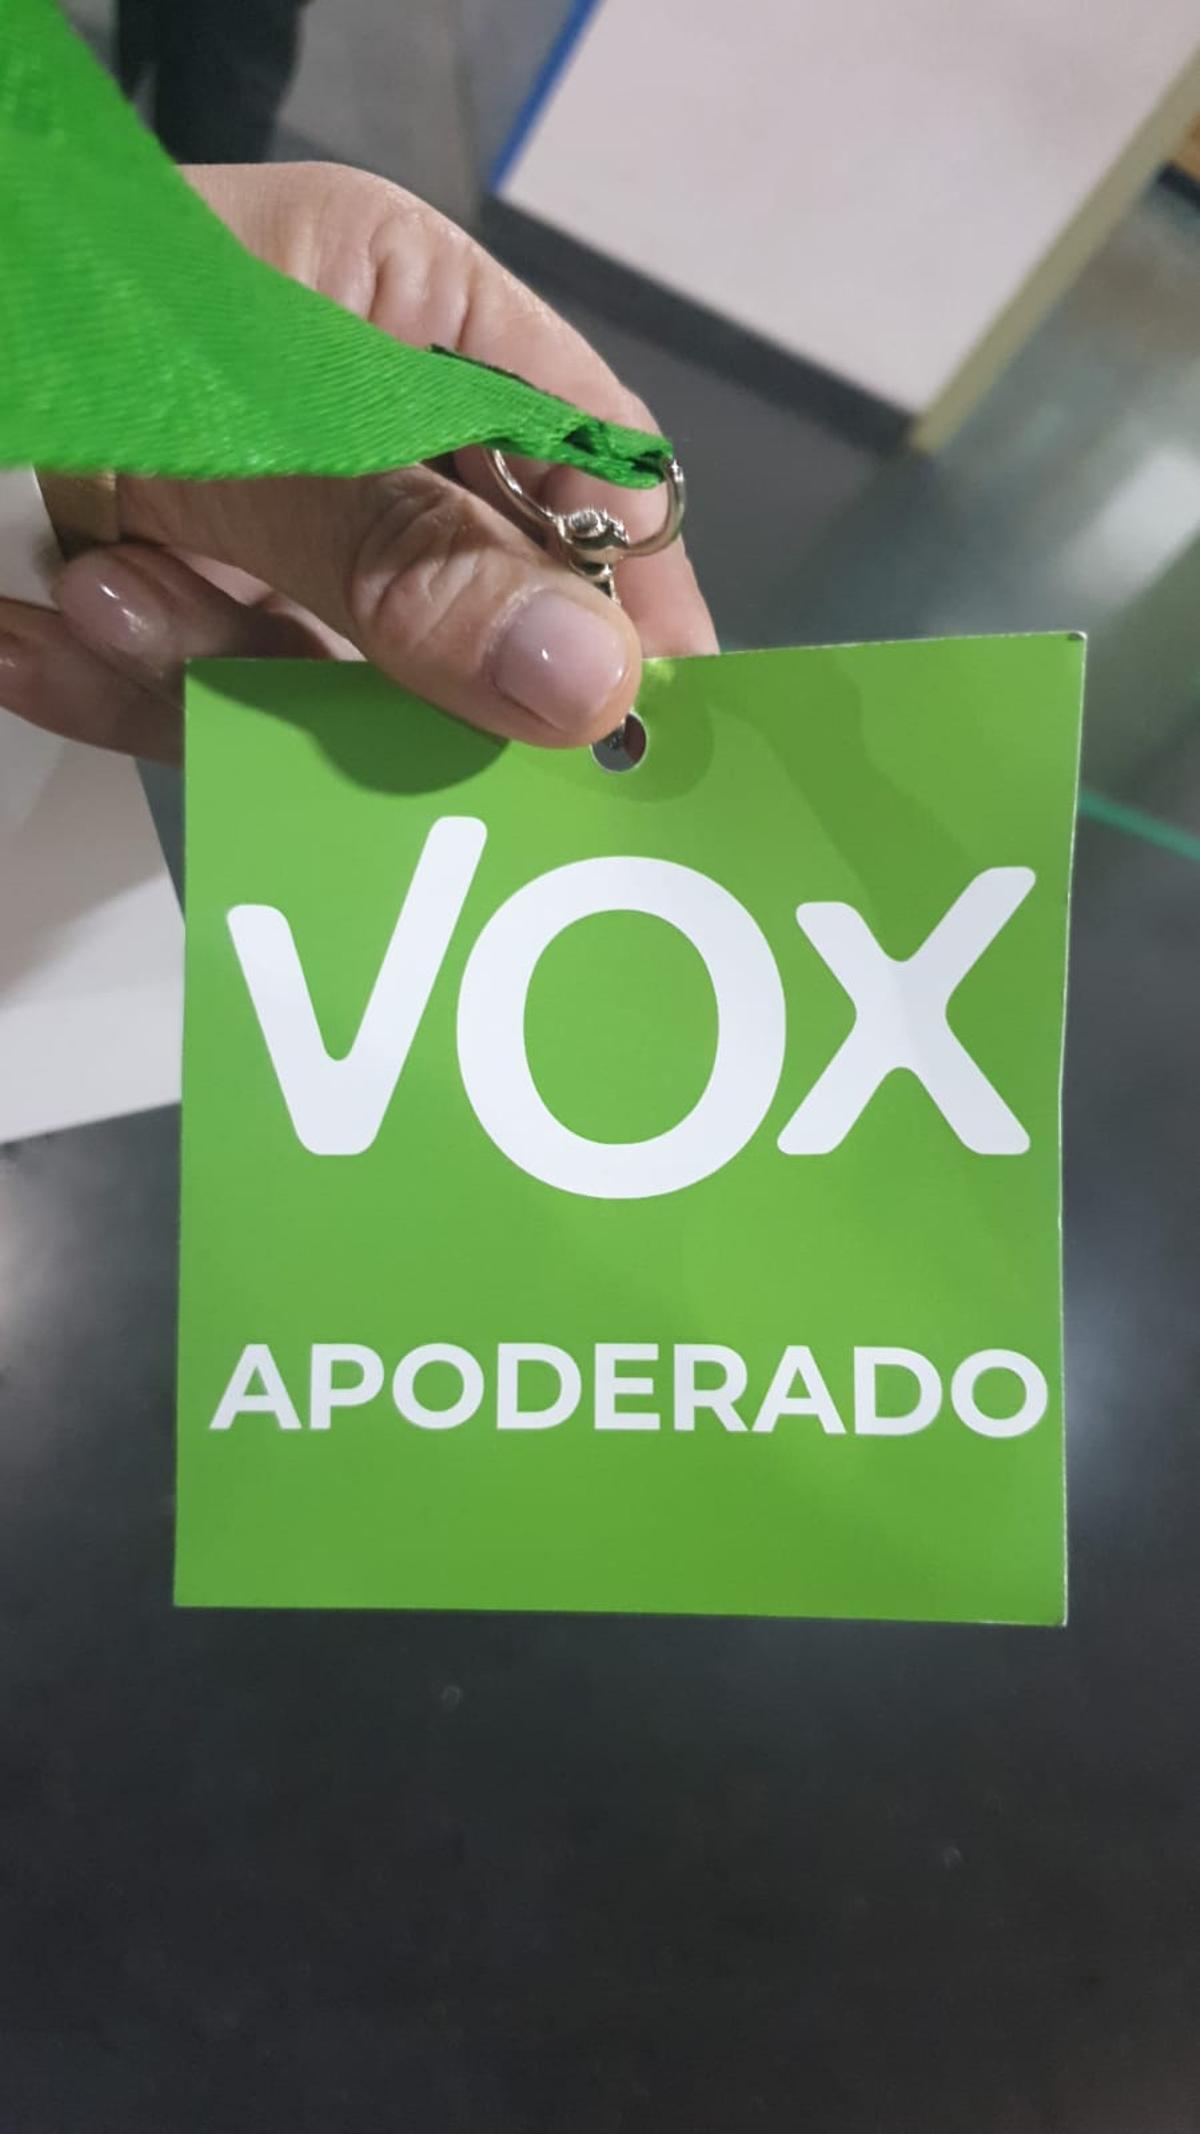 Los represntantes de Vox han tenido que recortar la bandera de España de las credenciales.